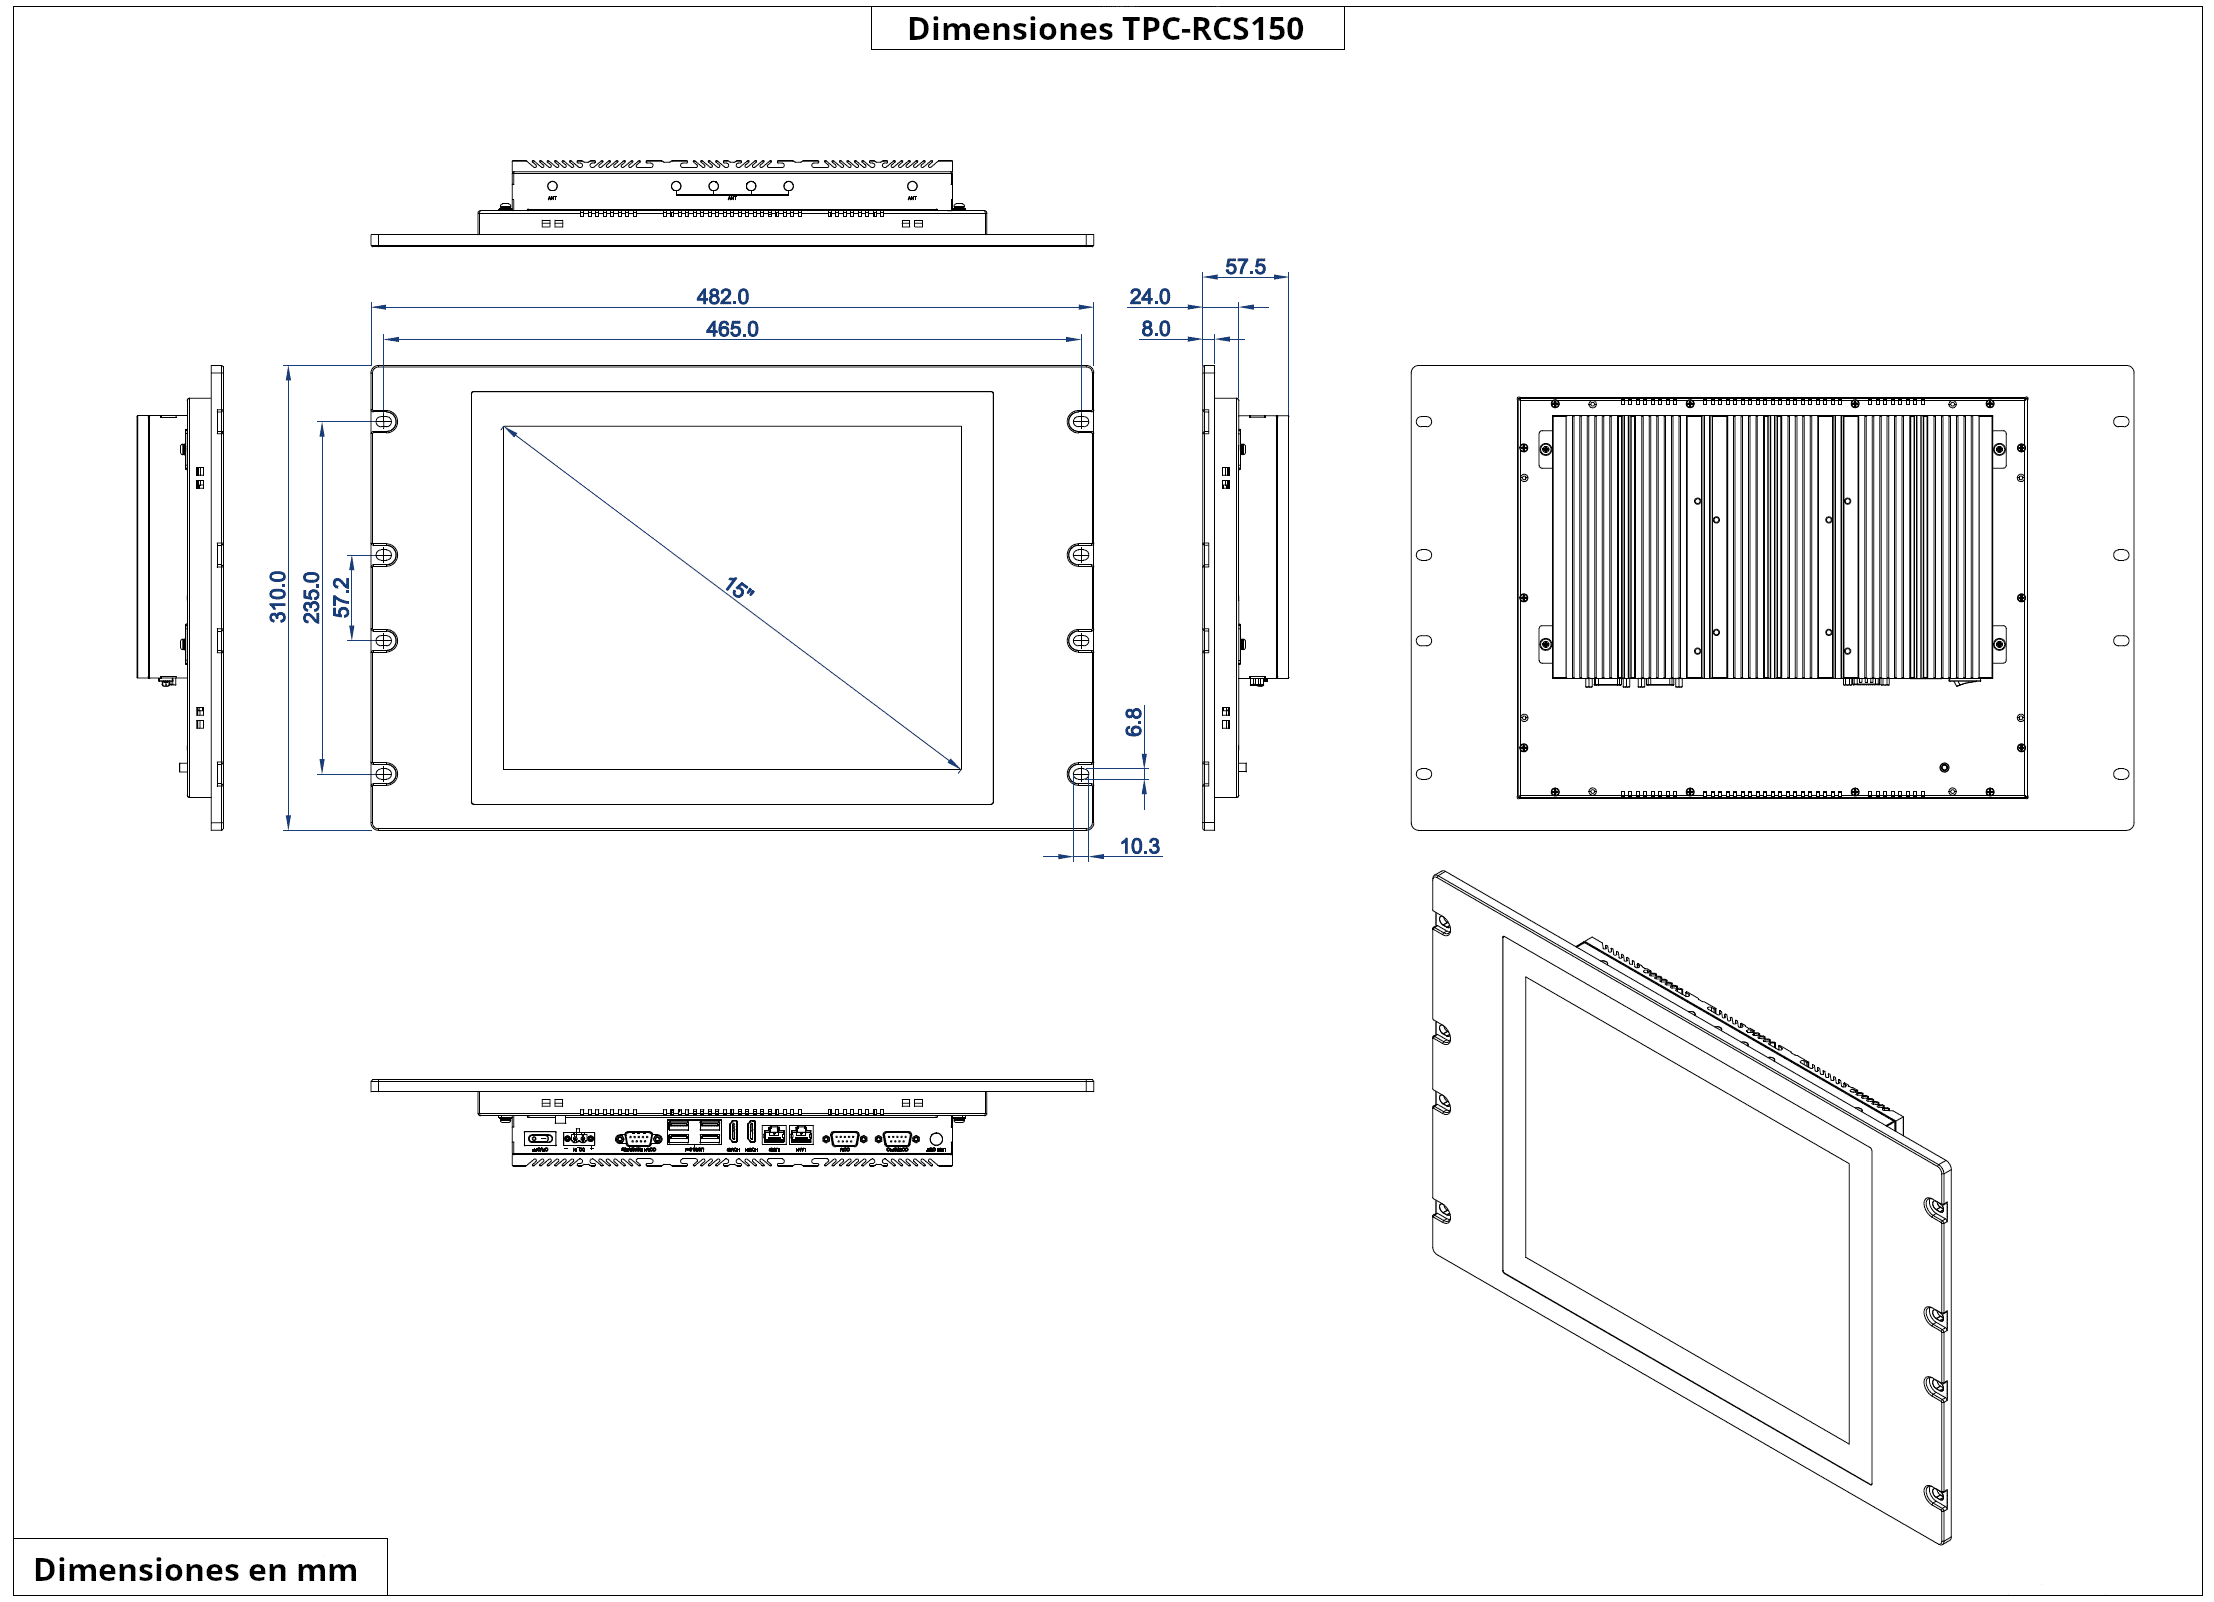 Dimensiones del producto TPC-RCS150